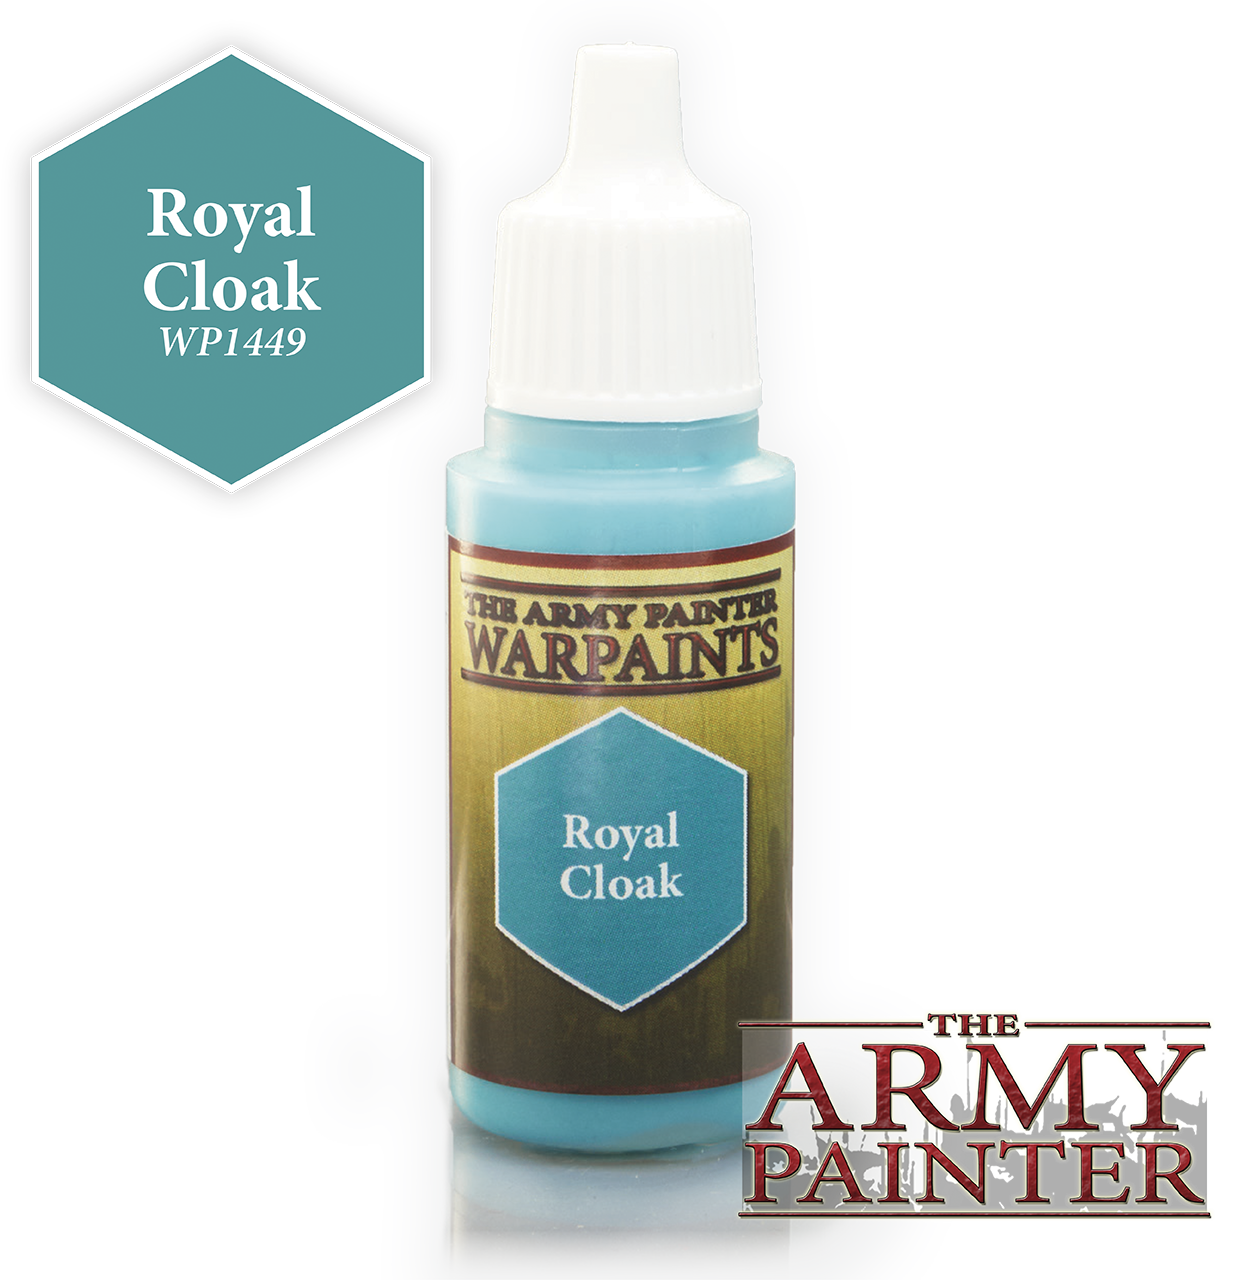 Royal Cloak - Army Painter Warpaints